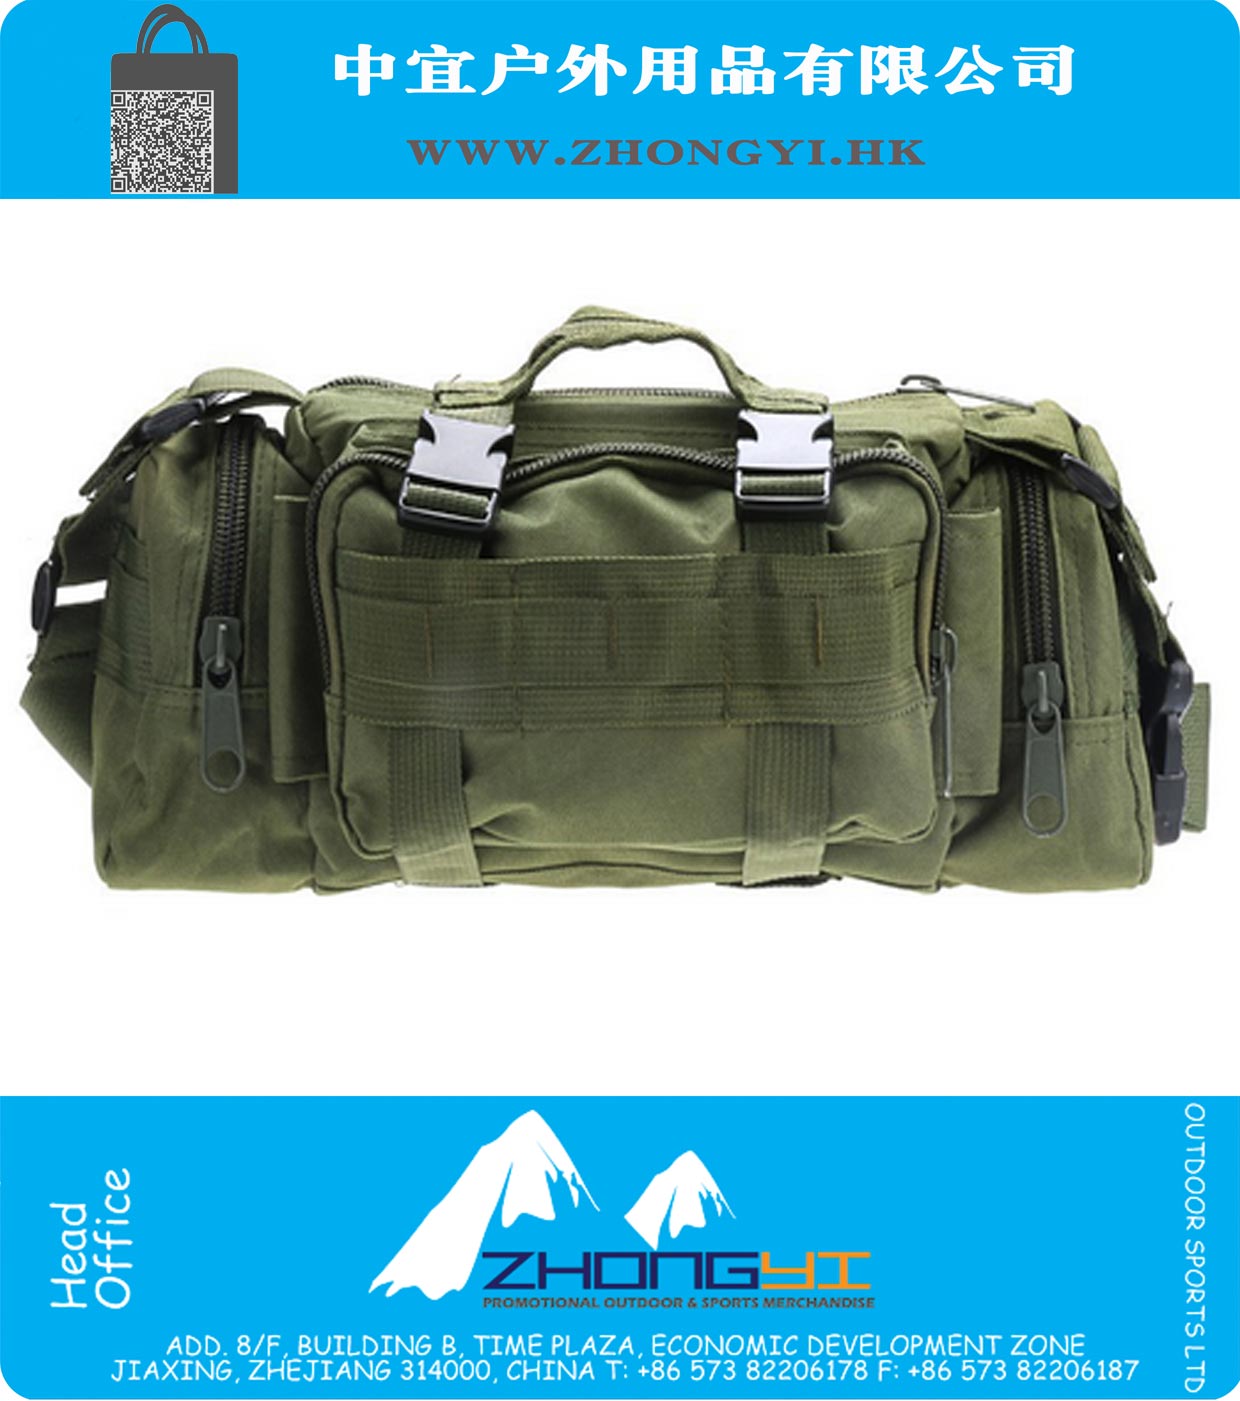 Tactical Molle Sports Bag Single Shoulder Bag Backpacking For 3 Day Assault Pack